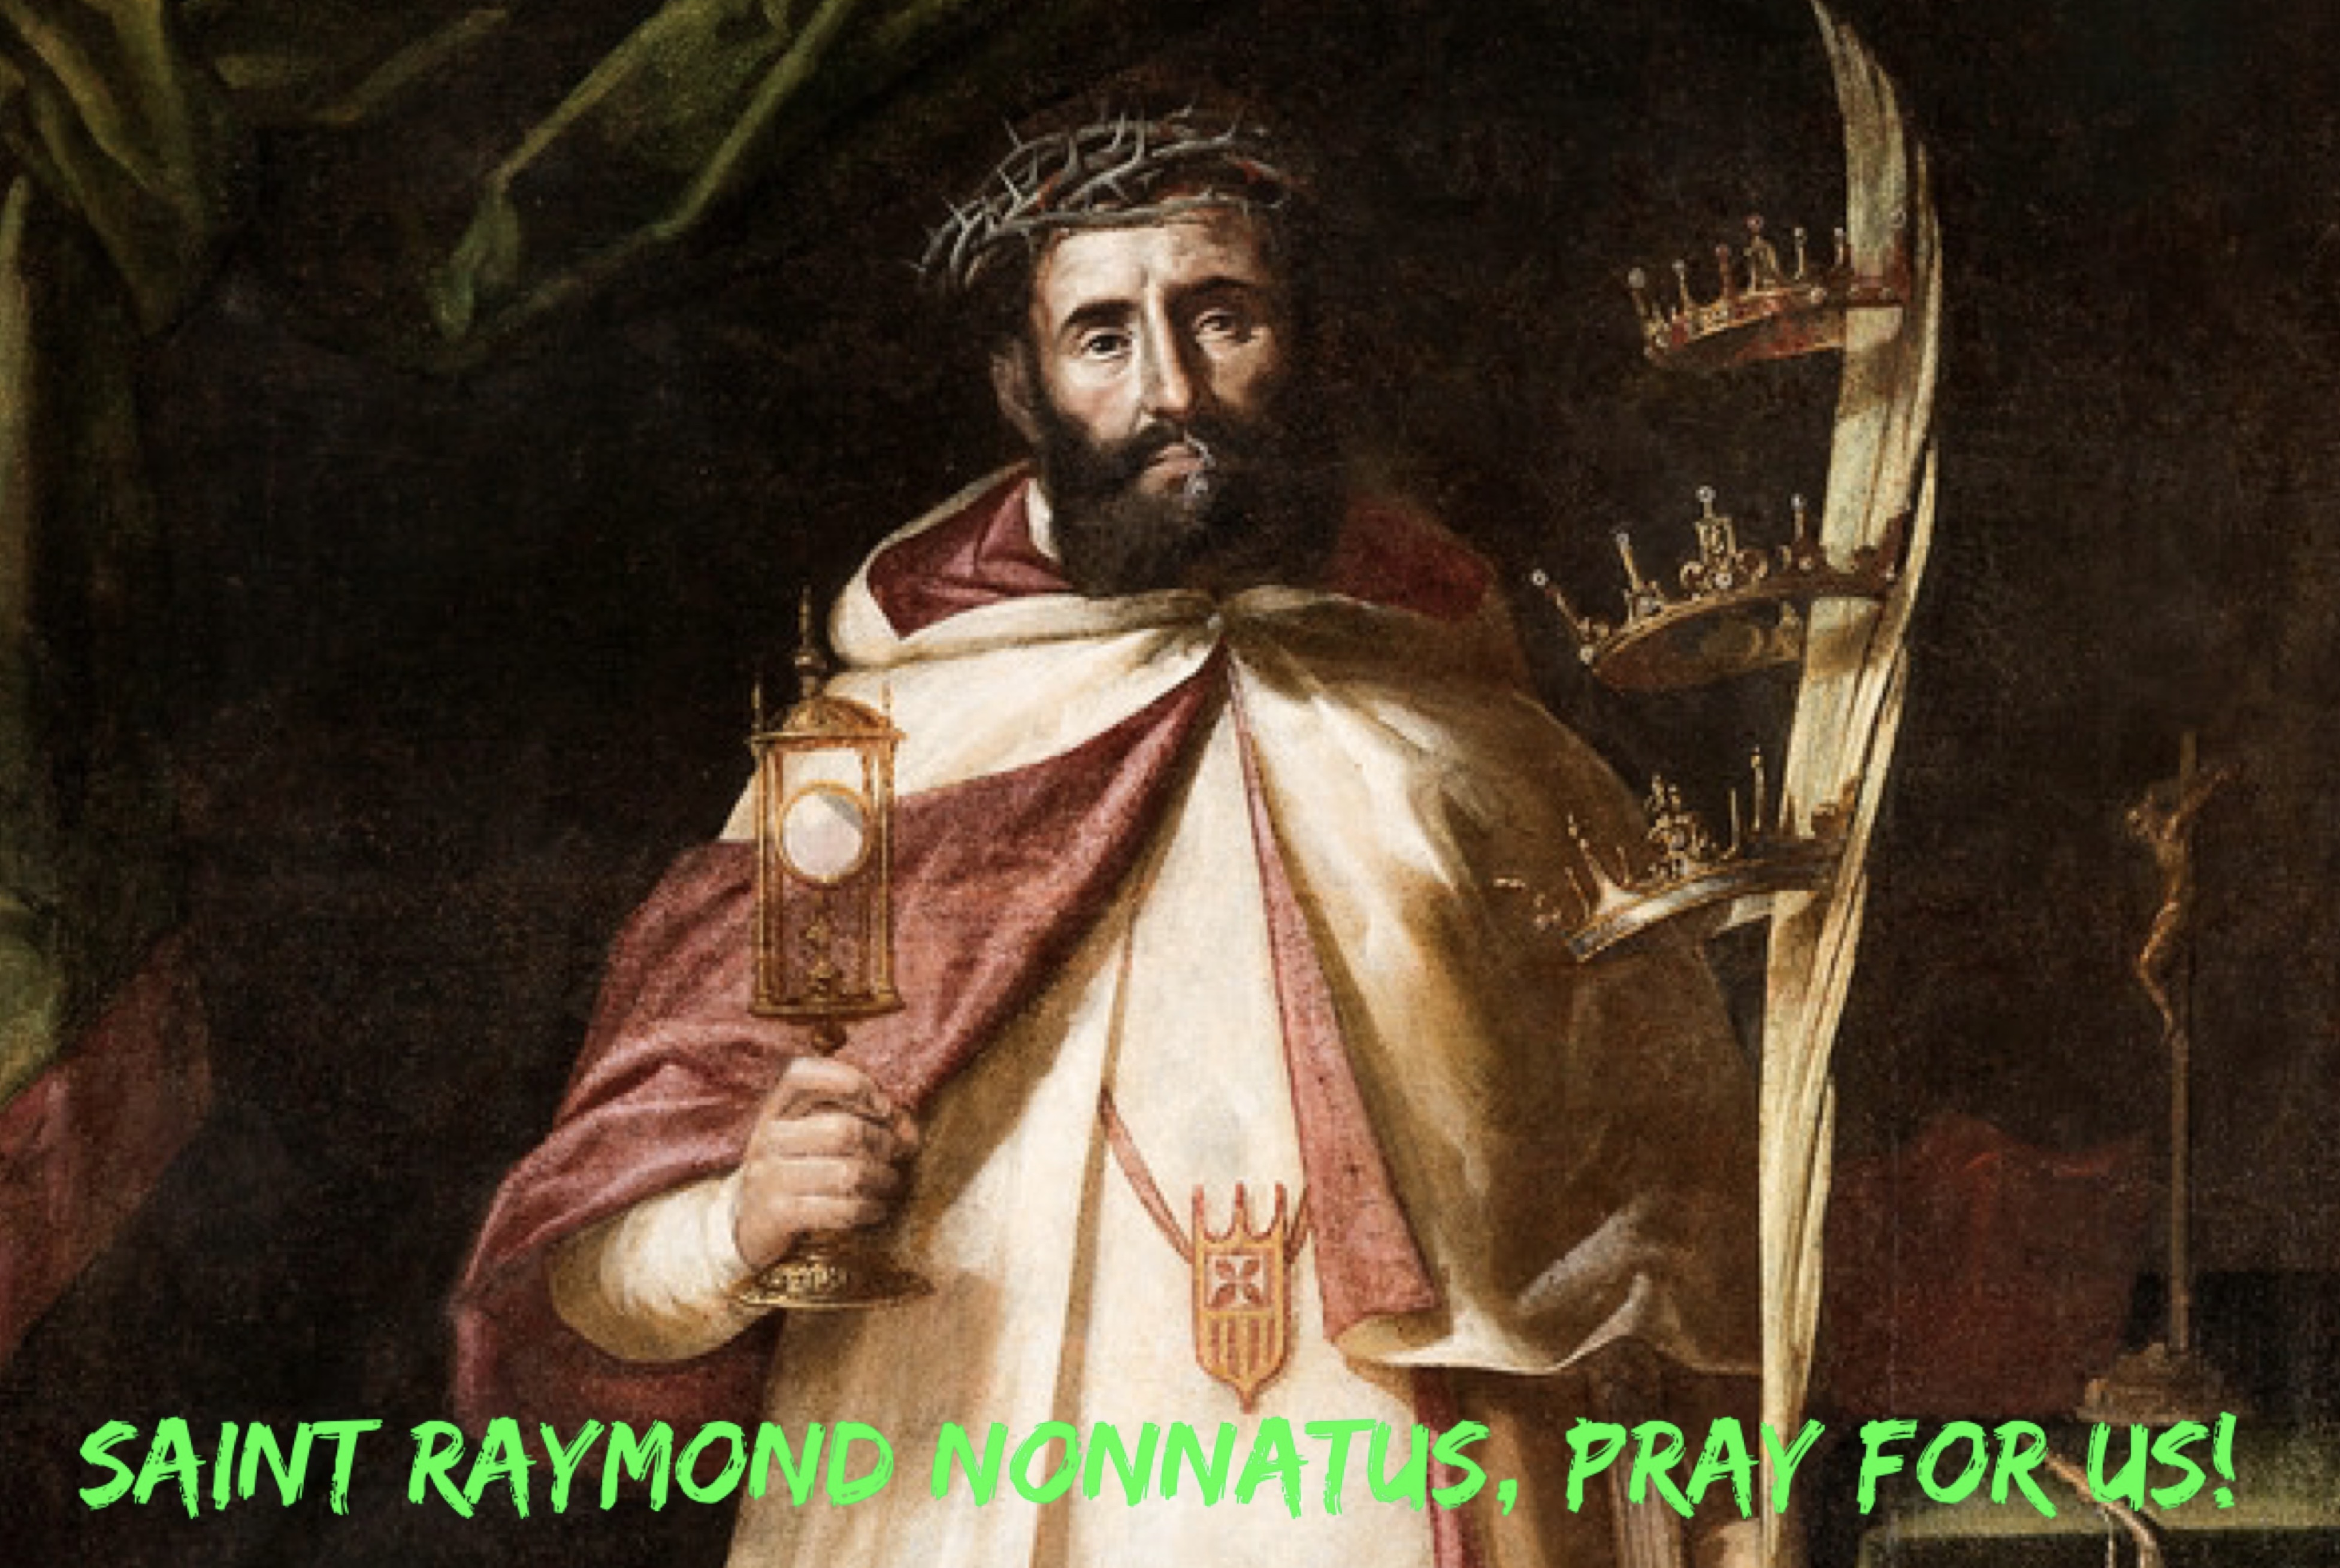 31st August - Saint Raymond Nonnatus